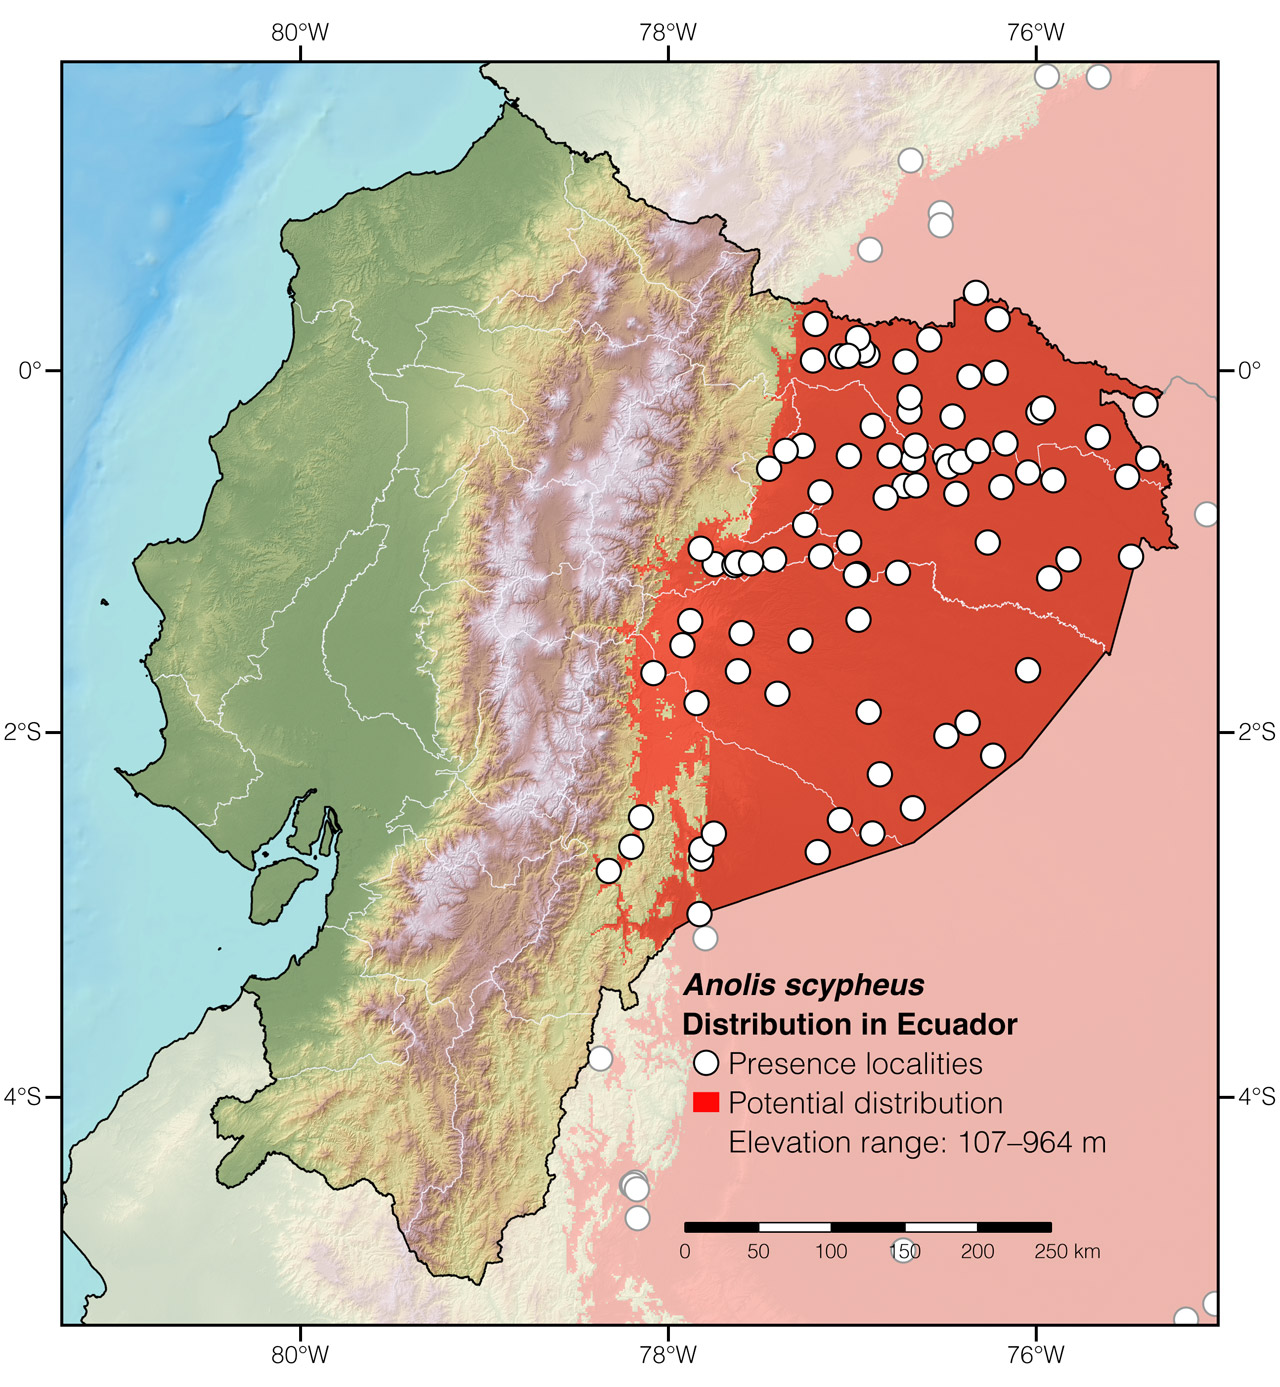 Distribution of Anolis scypheus in Ecuador